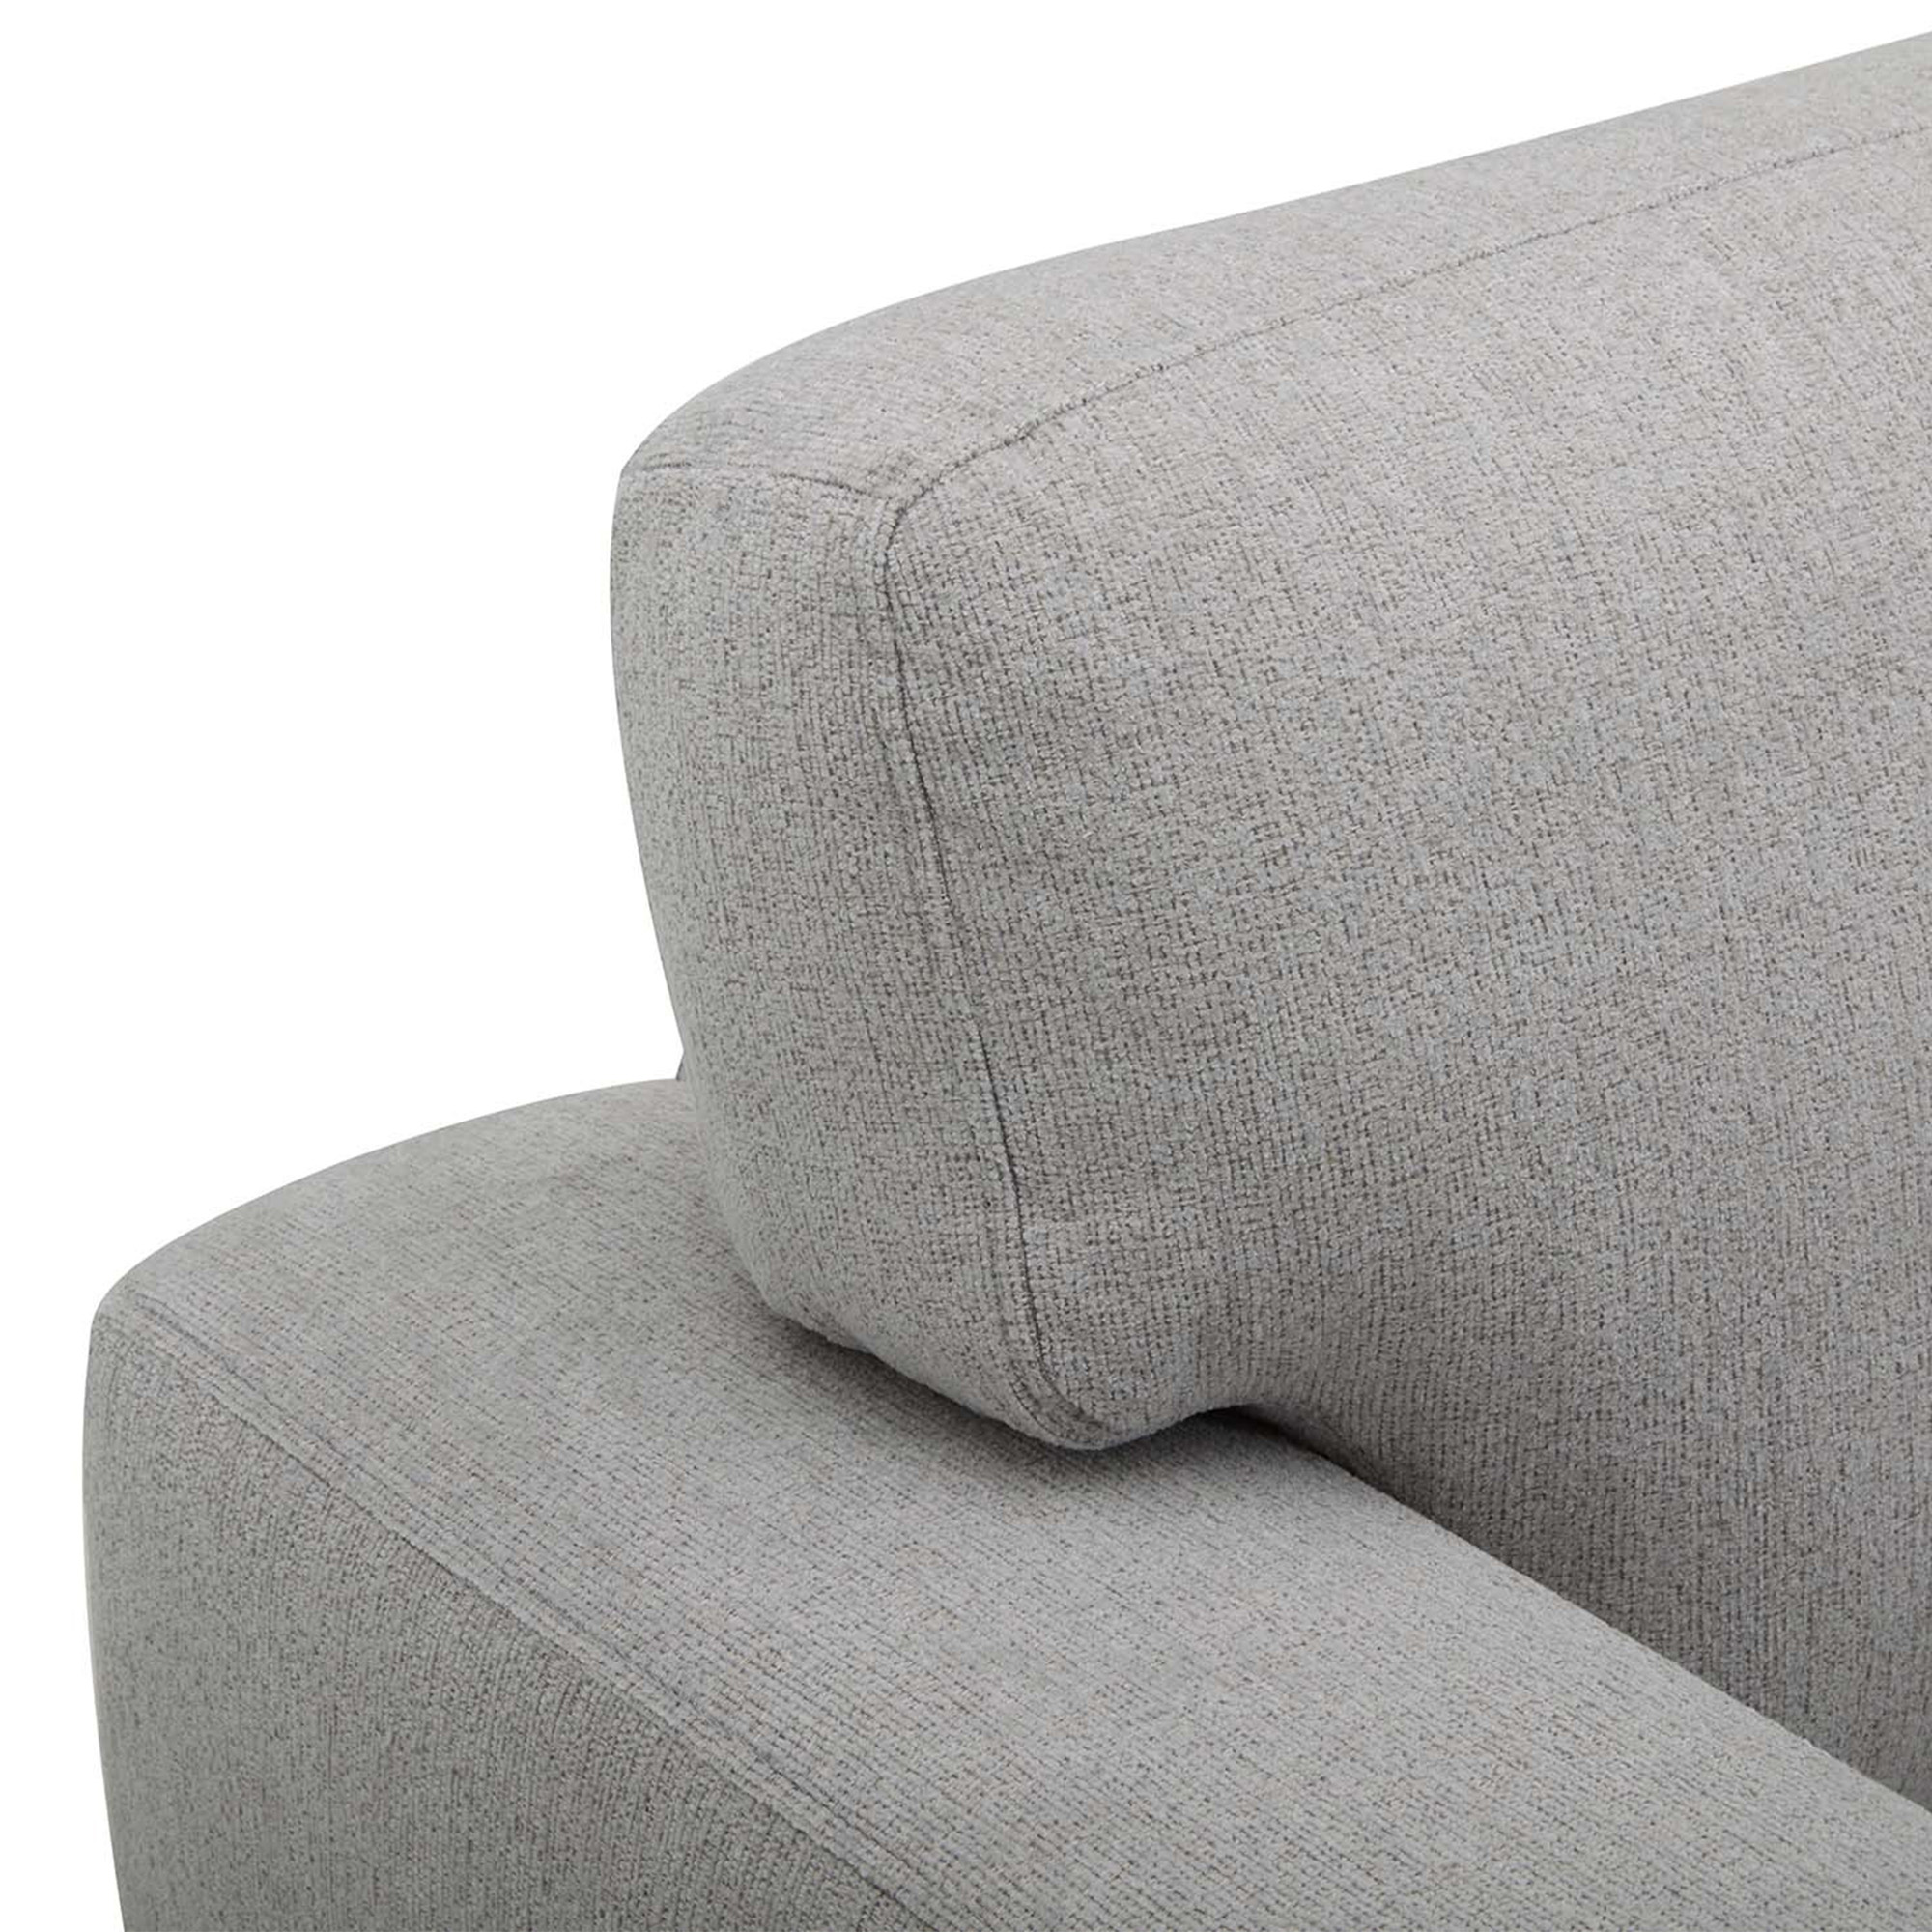 Canapé 2 places en tissu gris